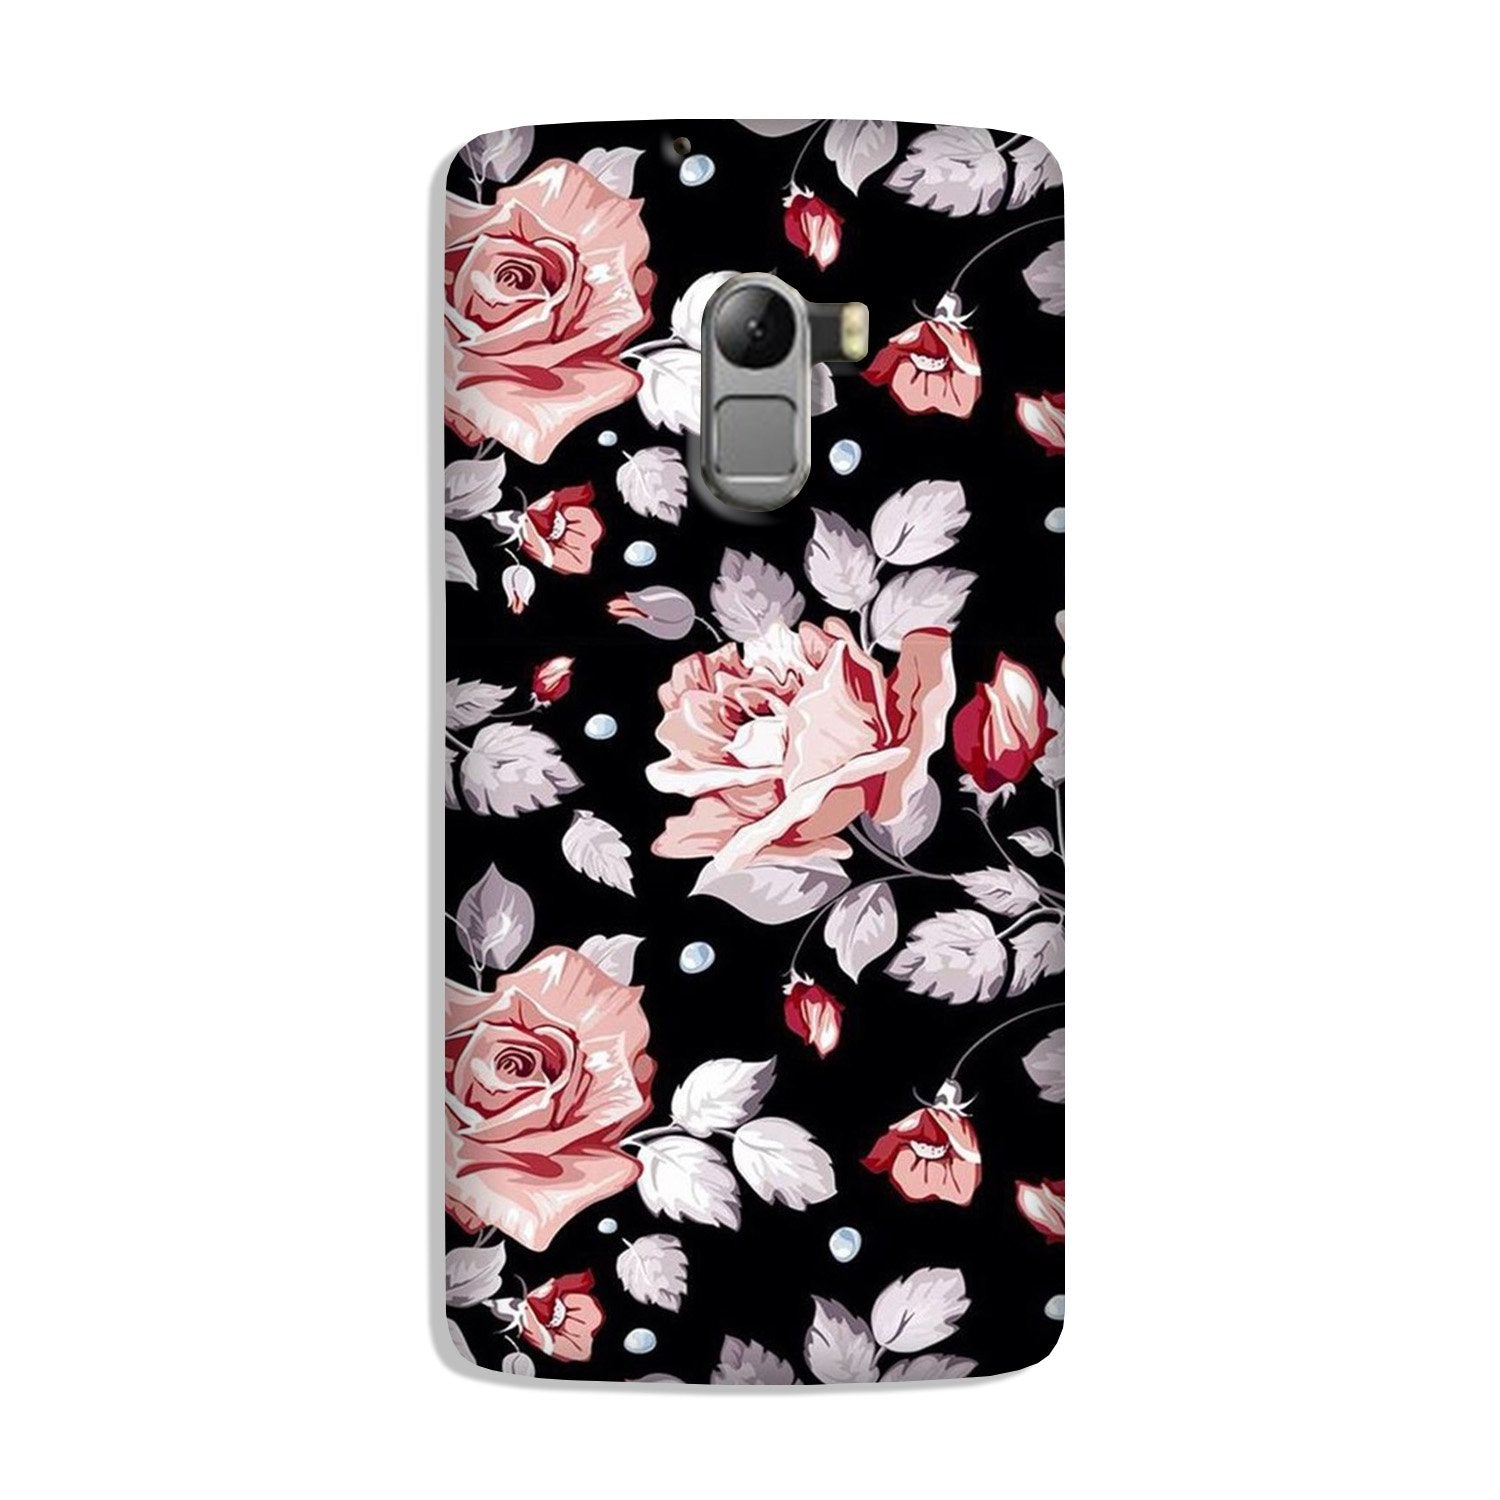 Pink rose Case for Lenovo K4 Note